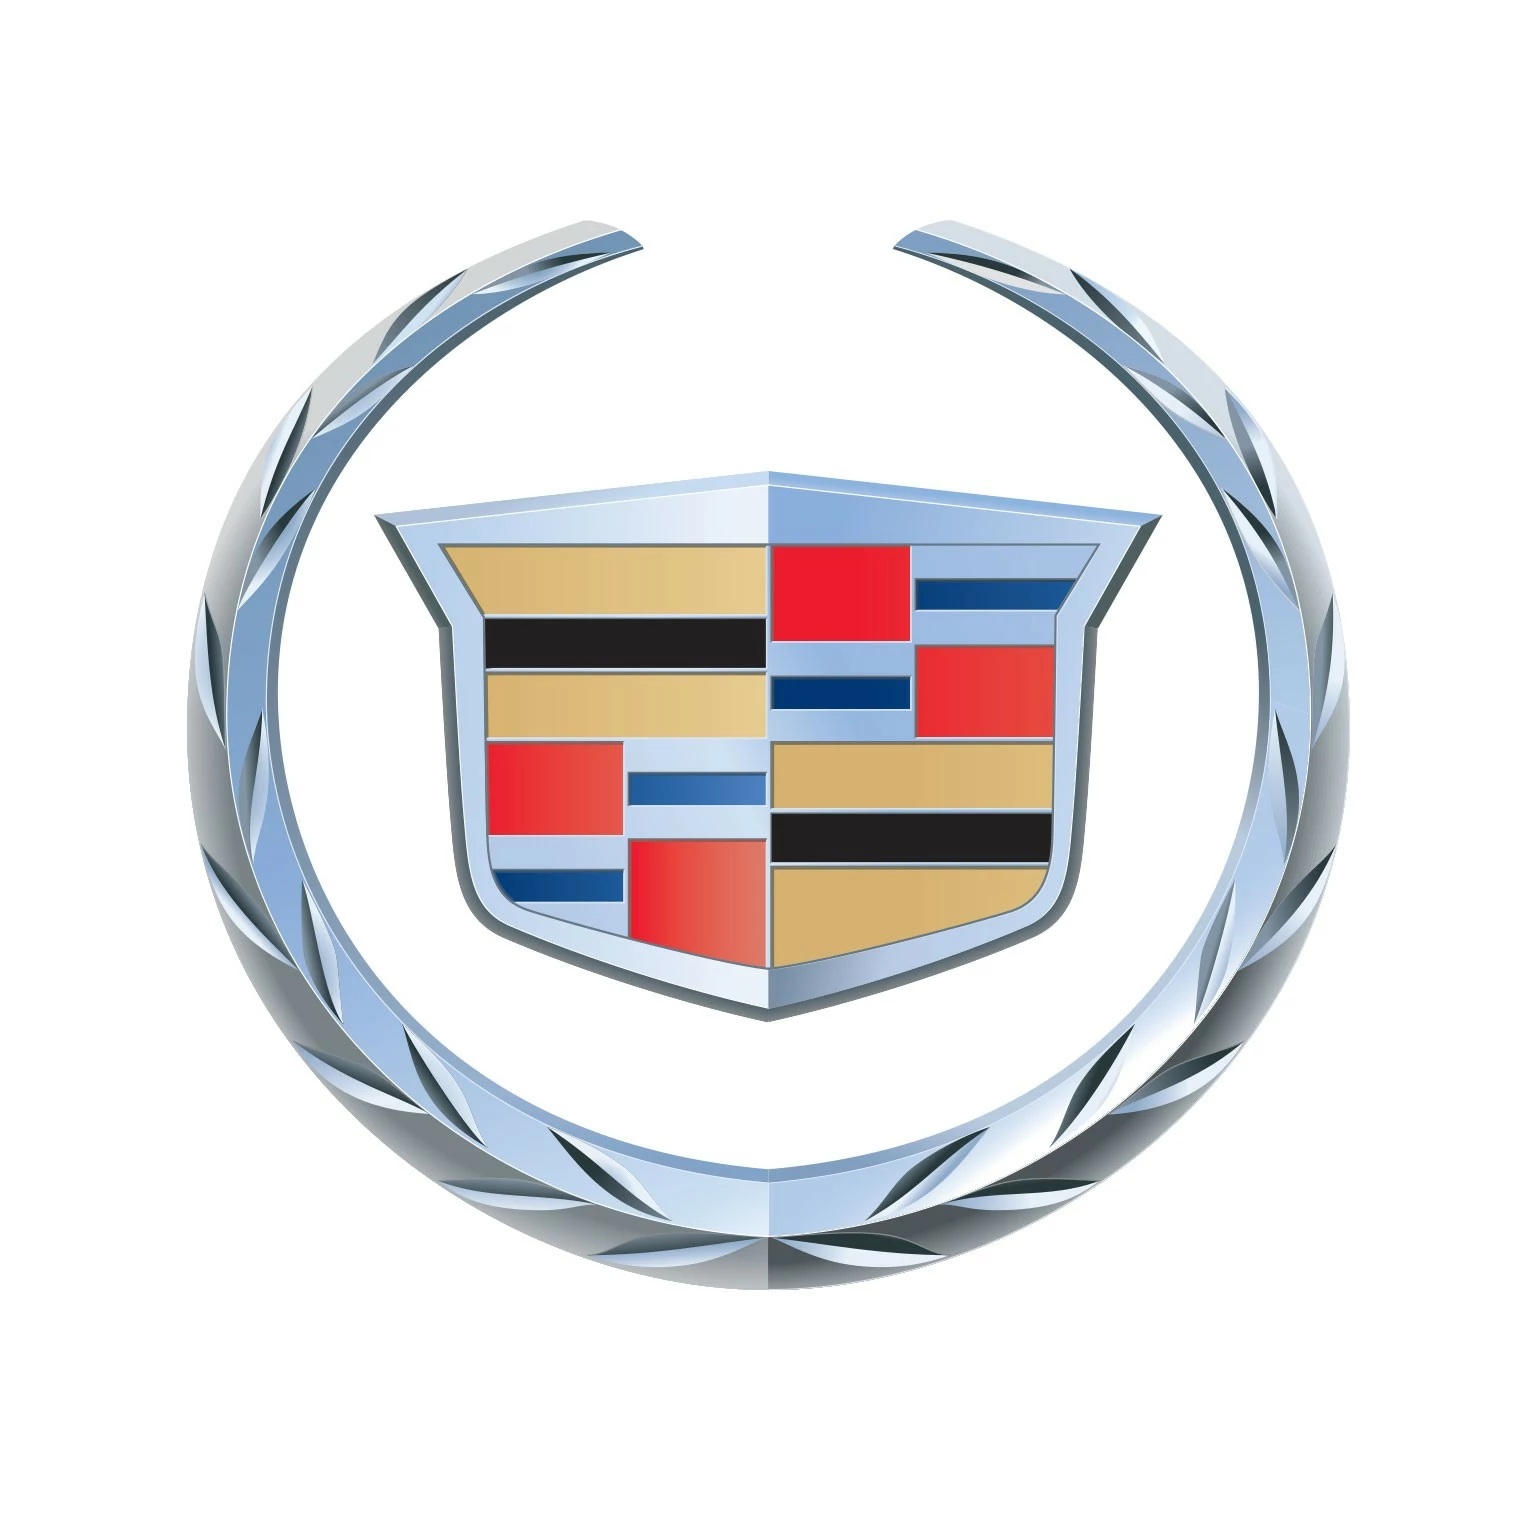 Кадиллак логотип